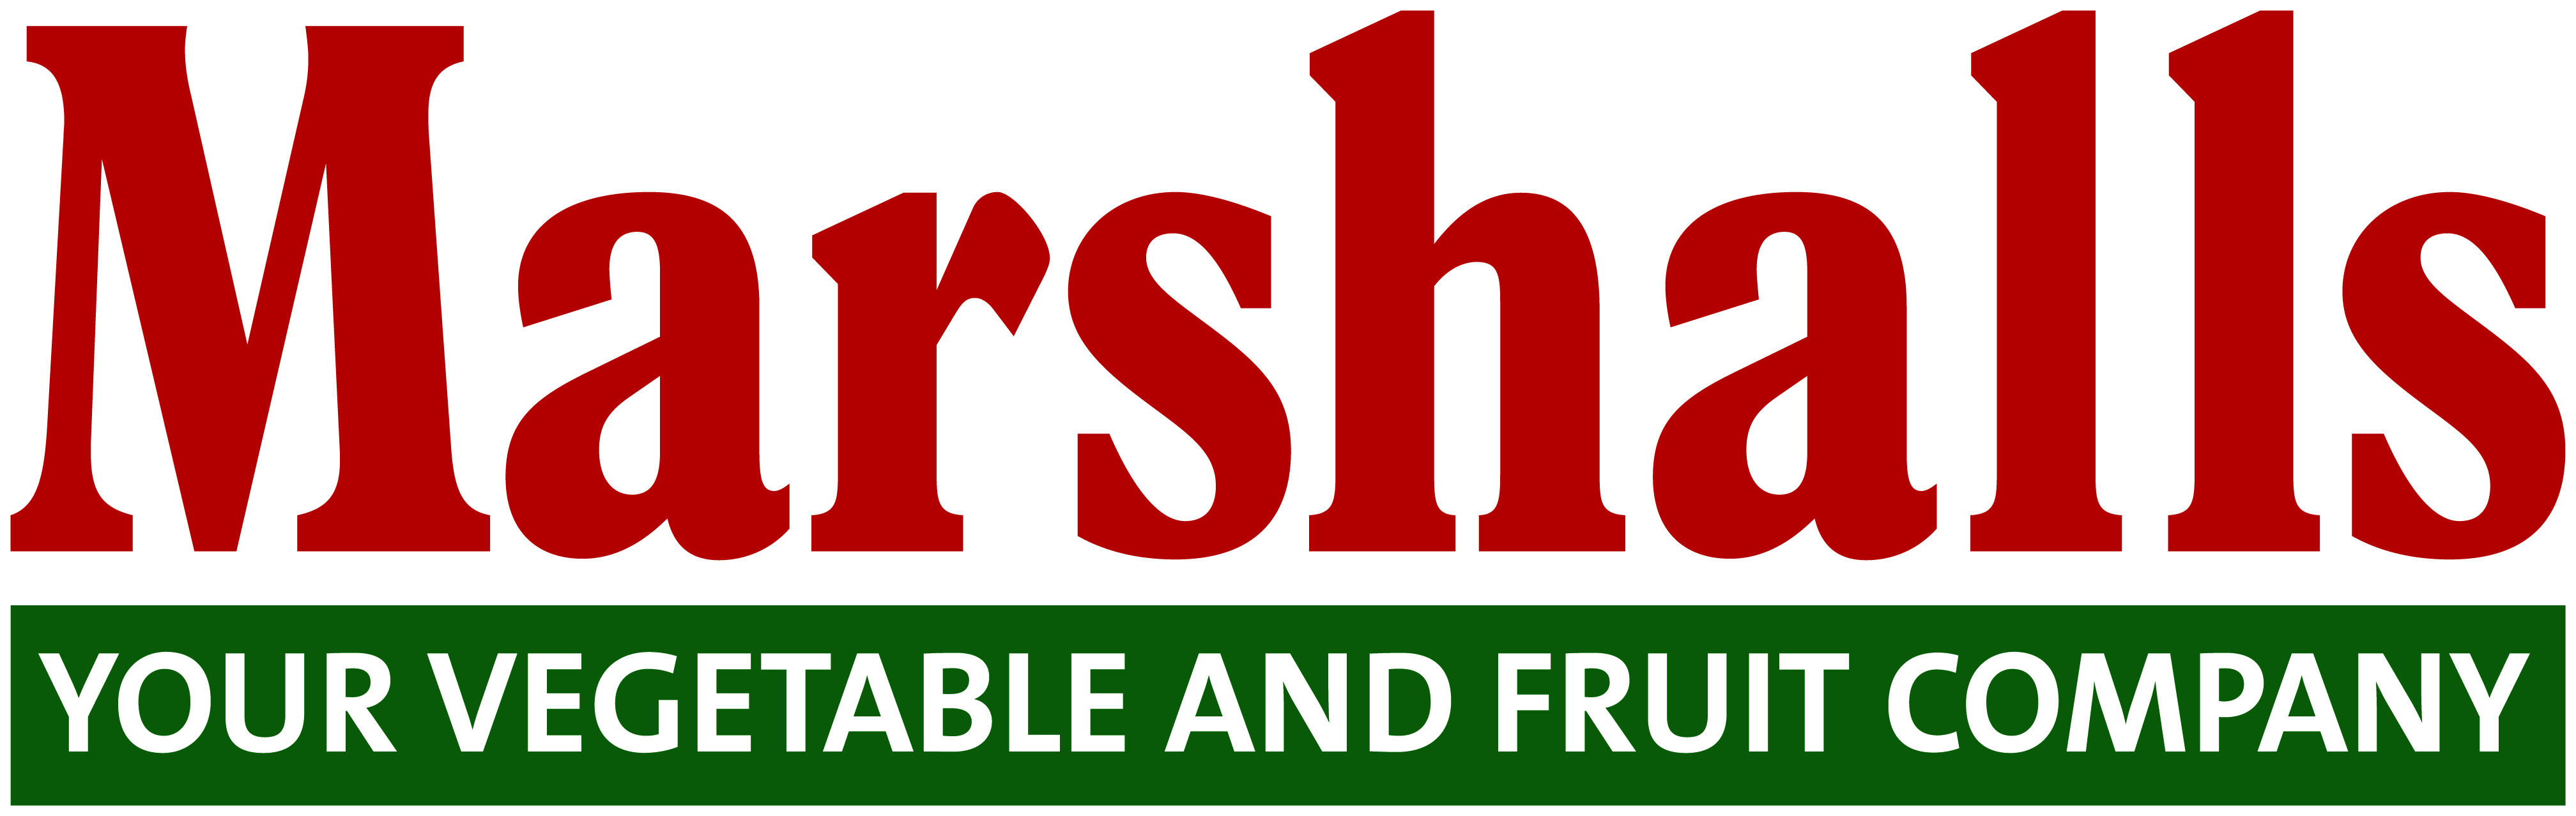 Marshalls logo 2016-CMYK_rev.jpg